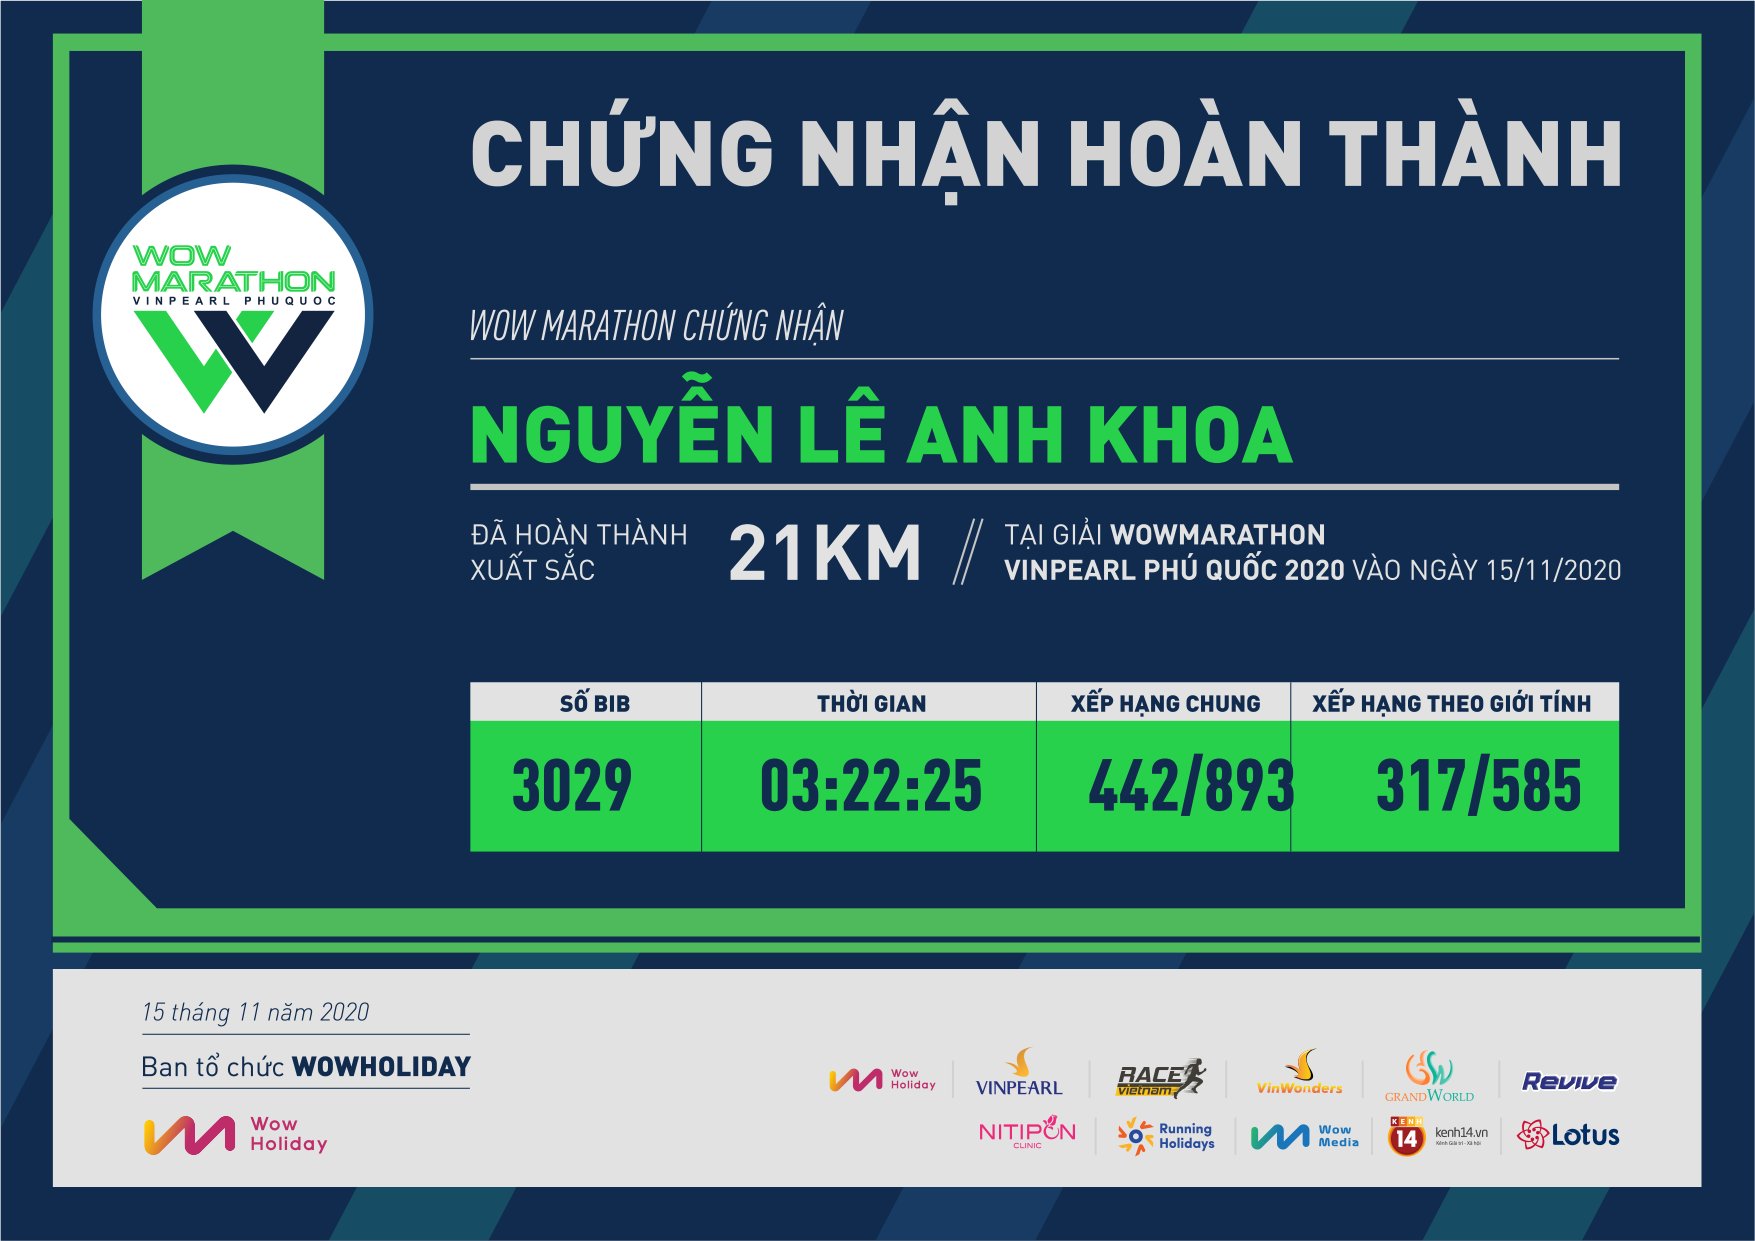 3029 - Nguyễn Lê Anh Khoa